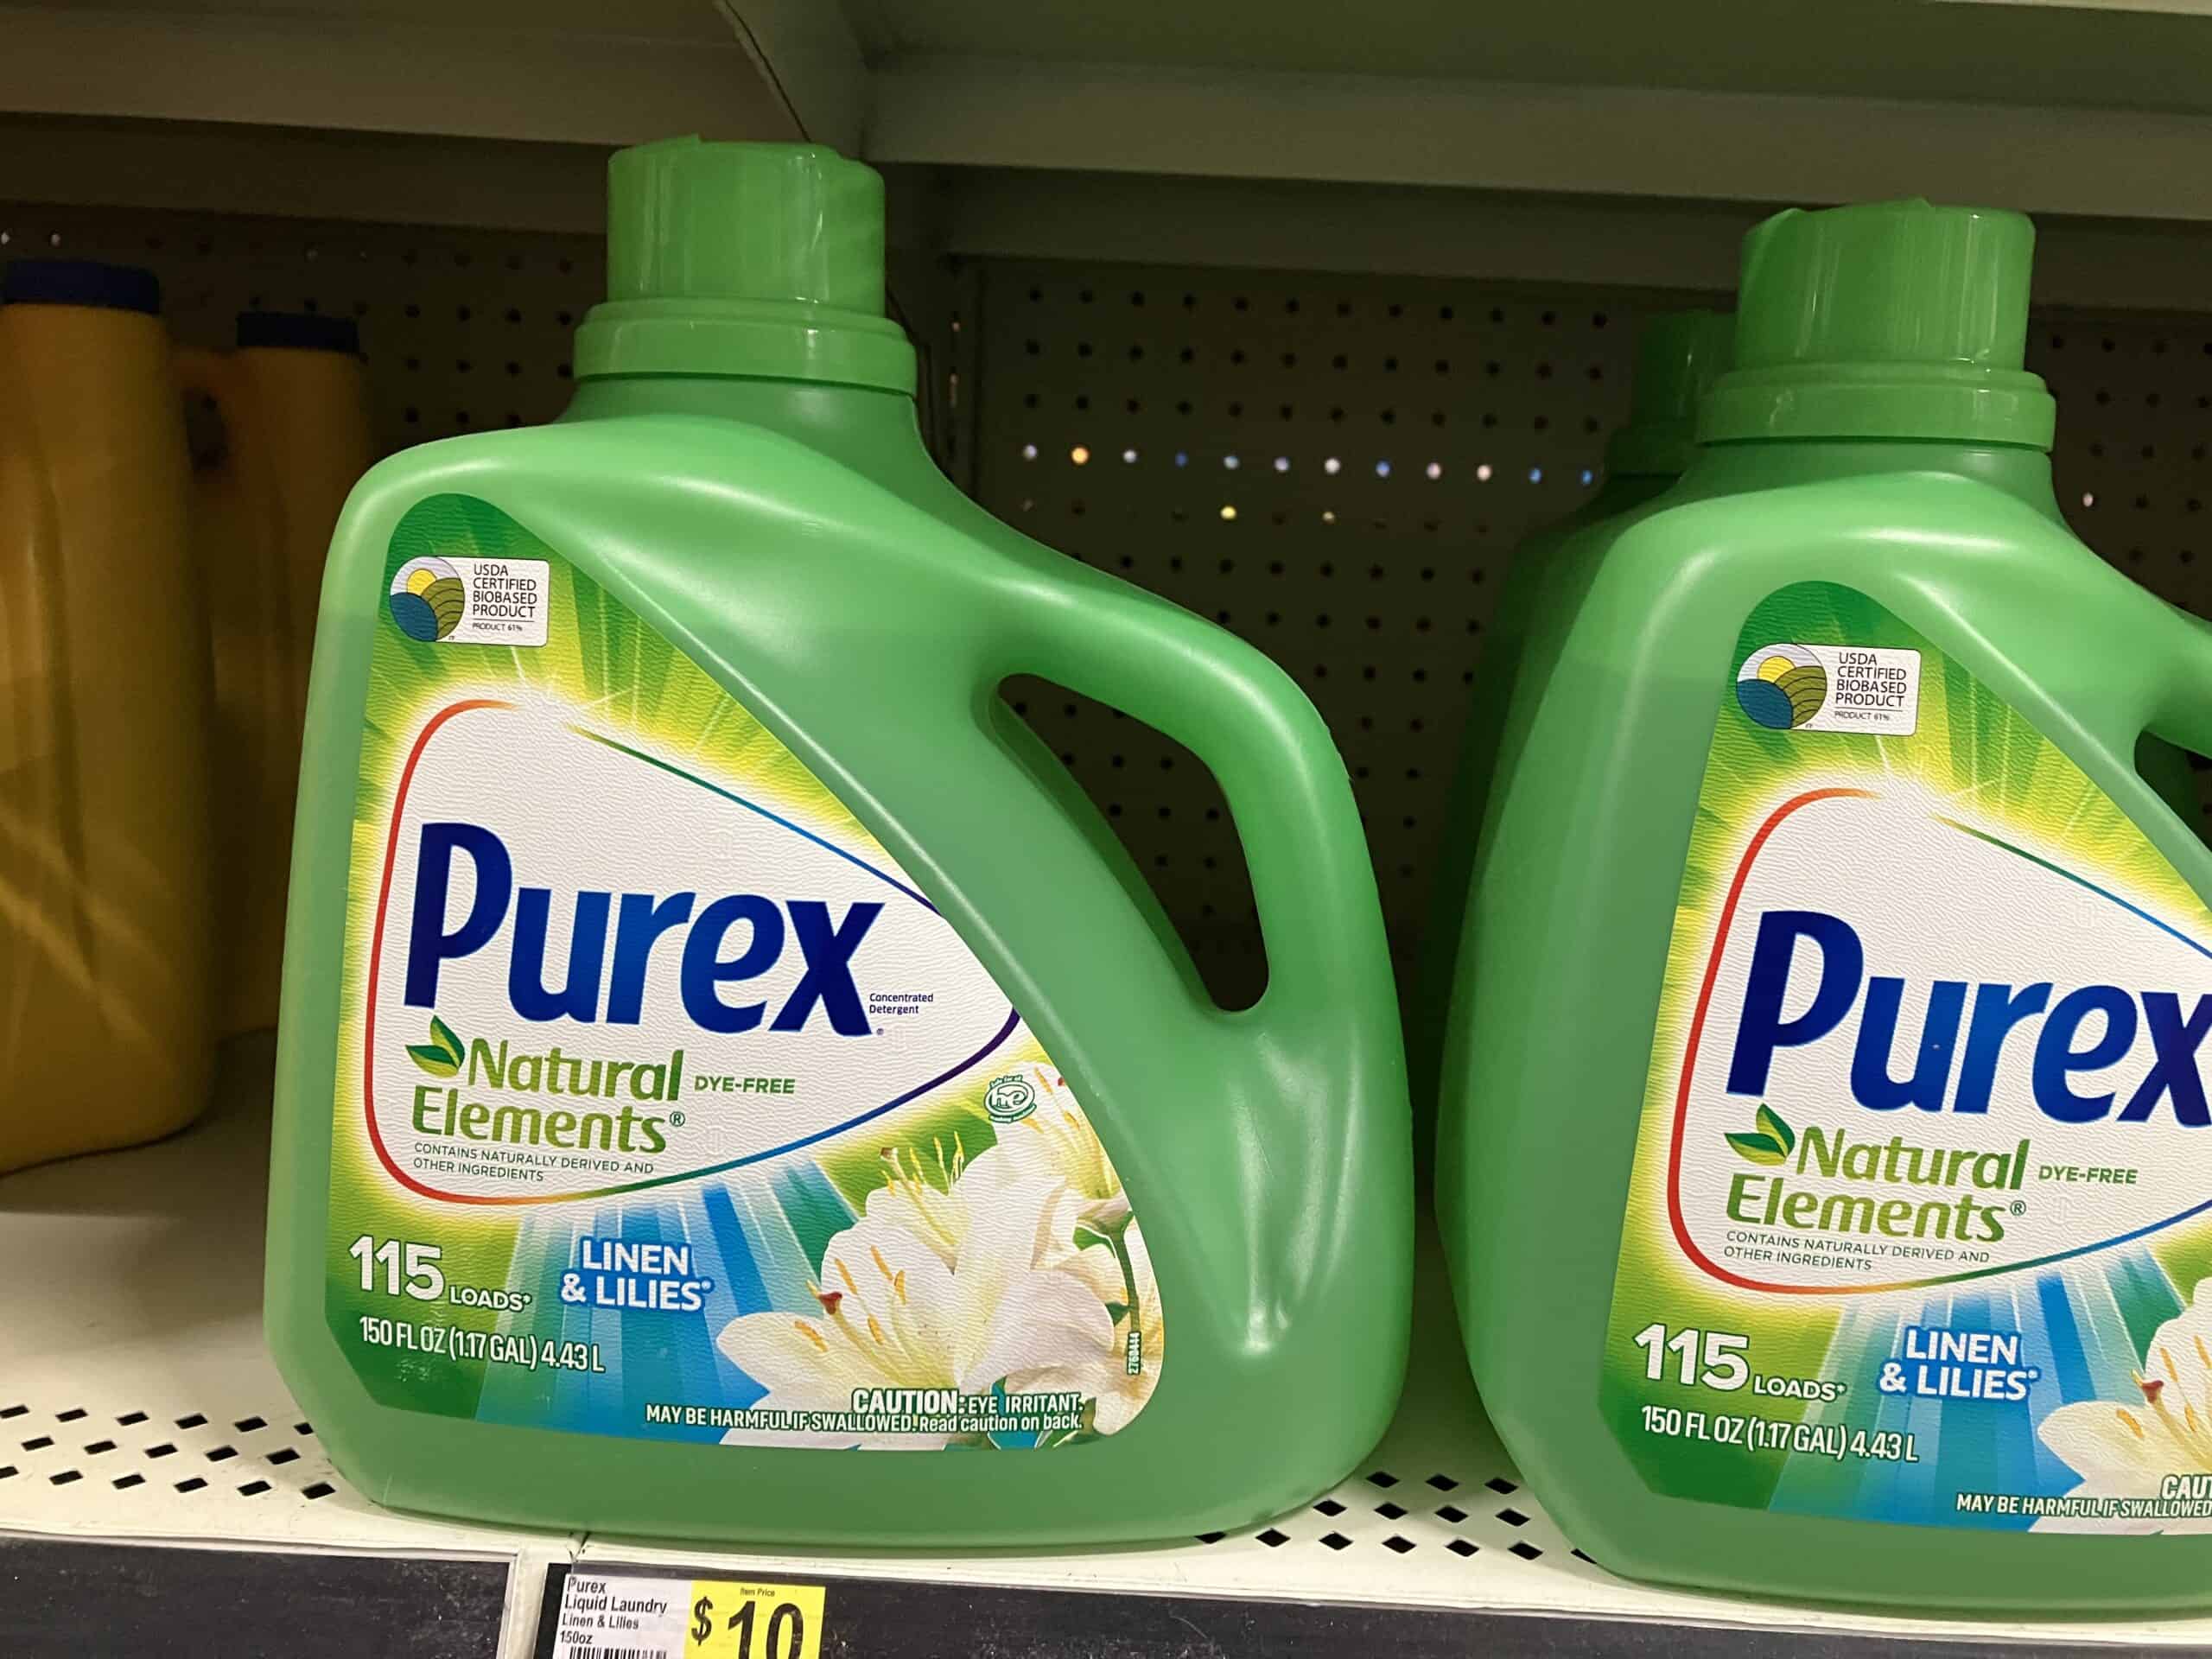 Purex "Natural Elements" laundry detergent